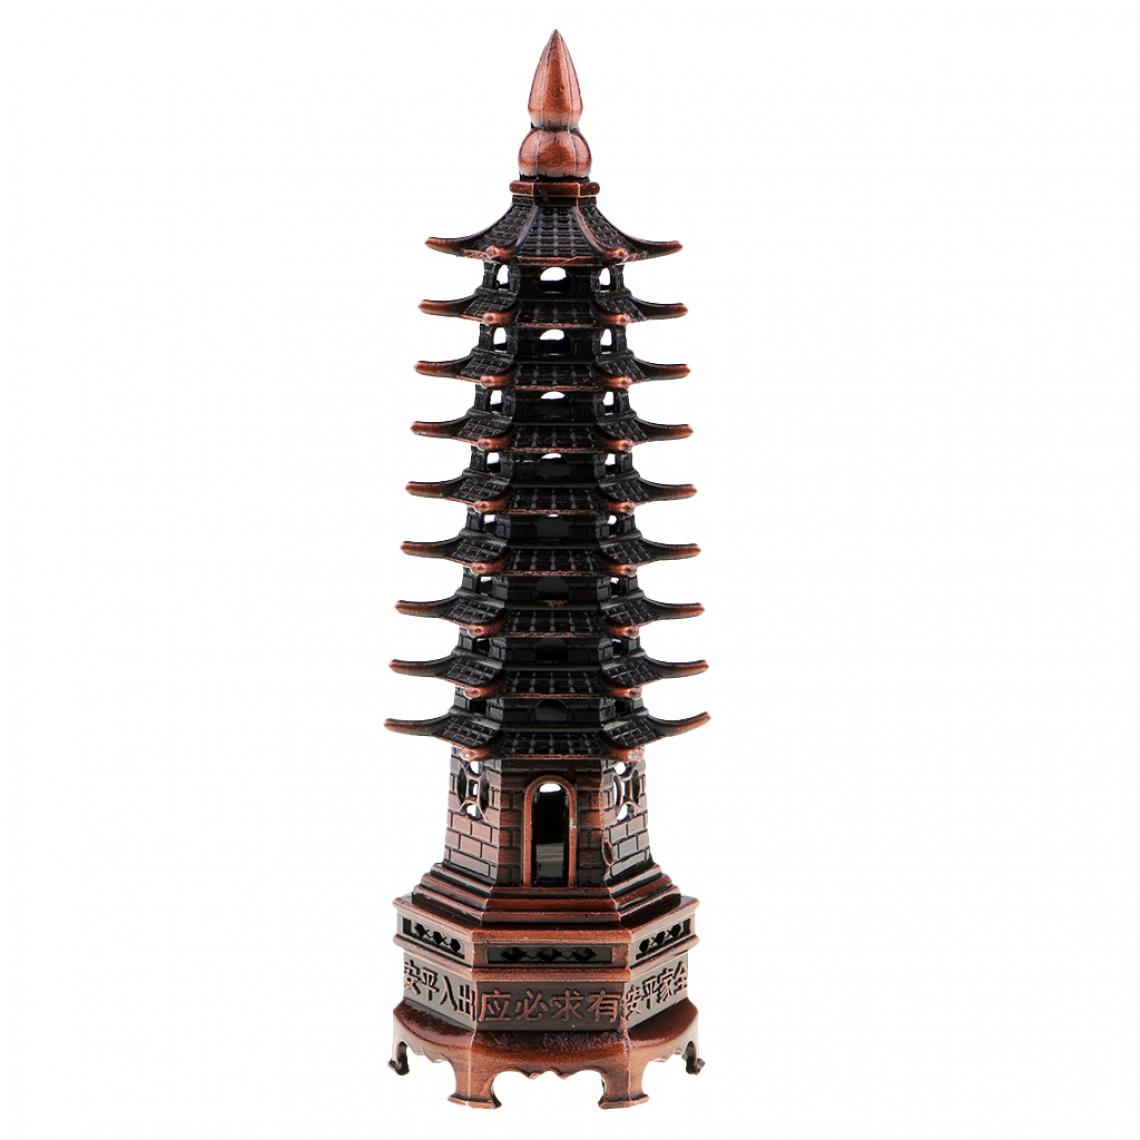 marque generique - Wenchang tour modèle artisanat Chine porcelaine pagode culturel décor rouge bronze - Objets déco